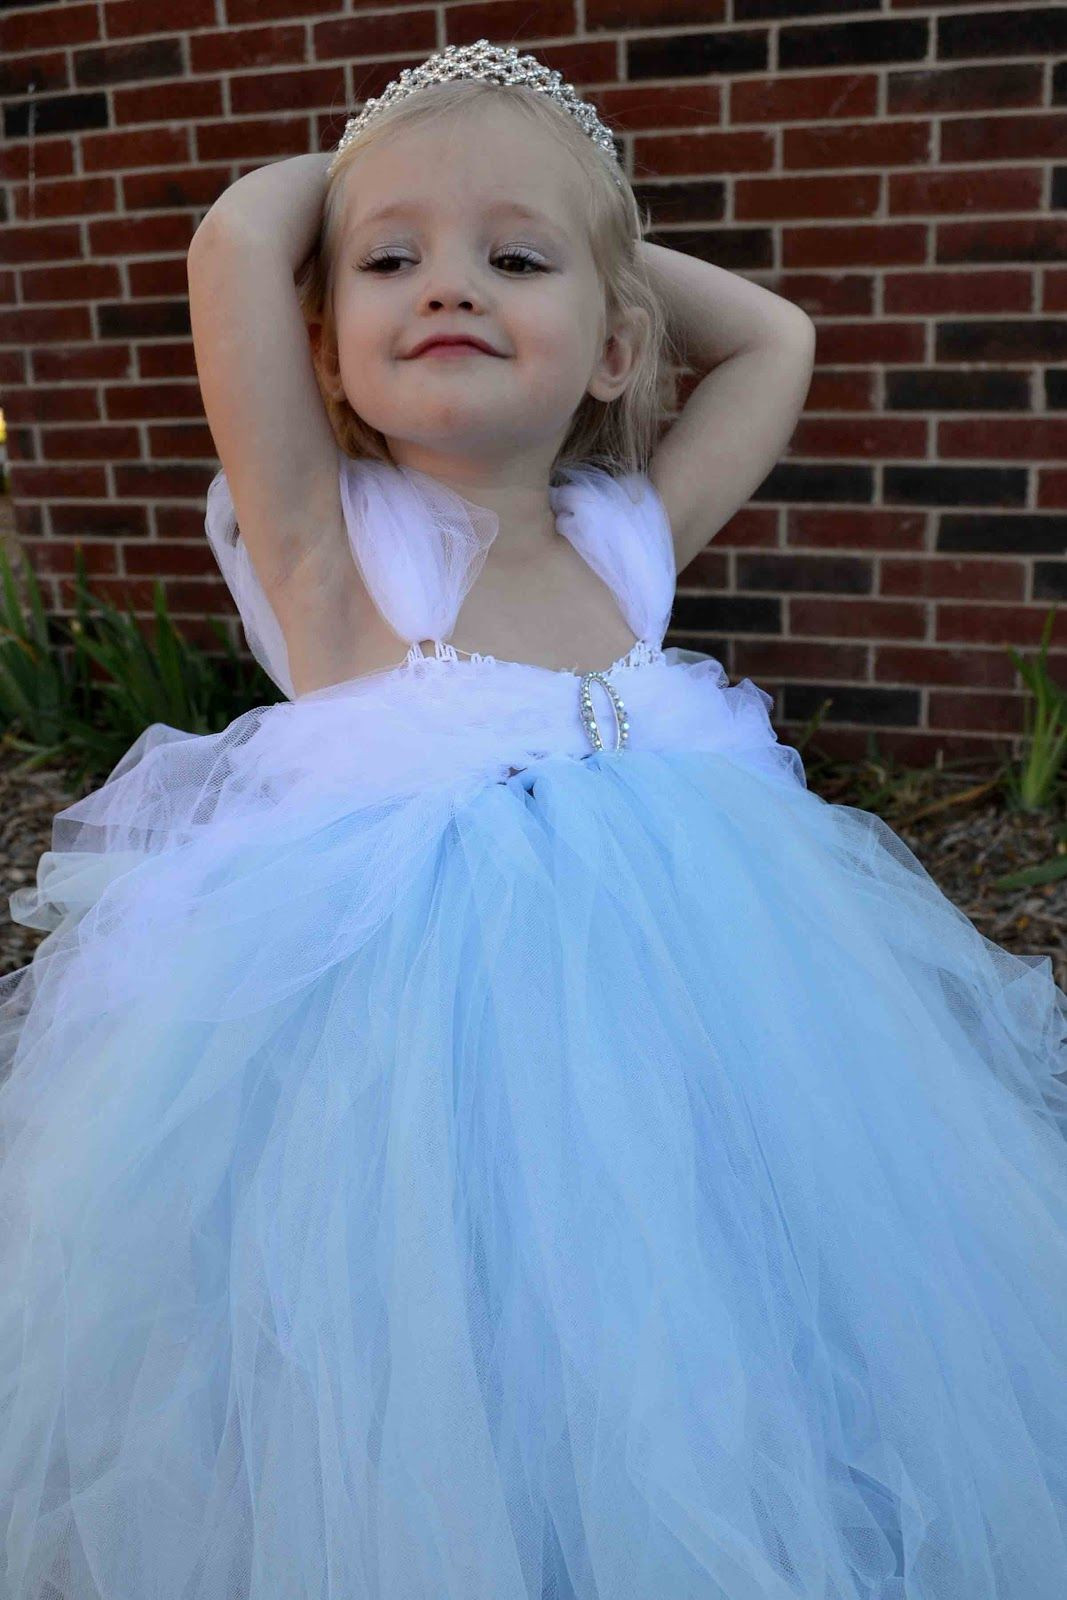 DIY Tulle Toddler Dress
 DIY Tulle skirts on Pinterest